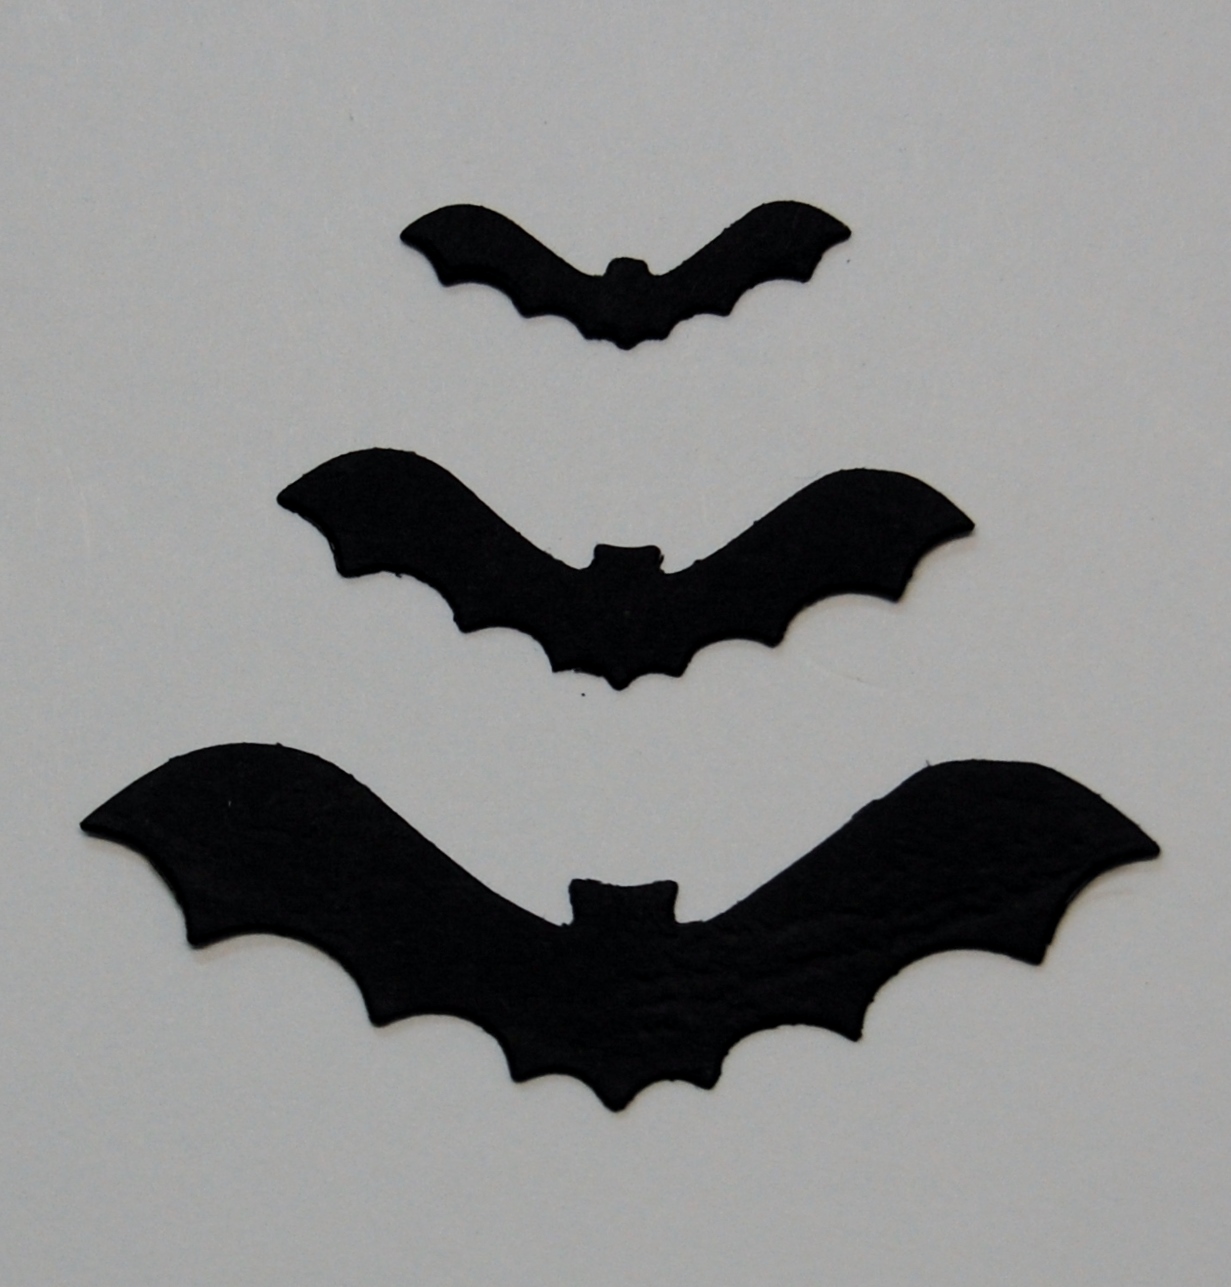 Diemond Dies Flying Bats Die Cuts